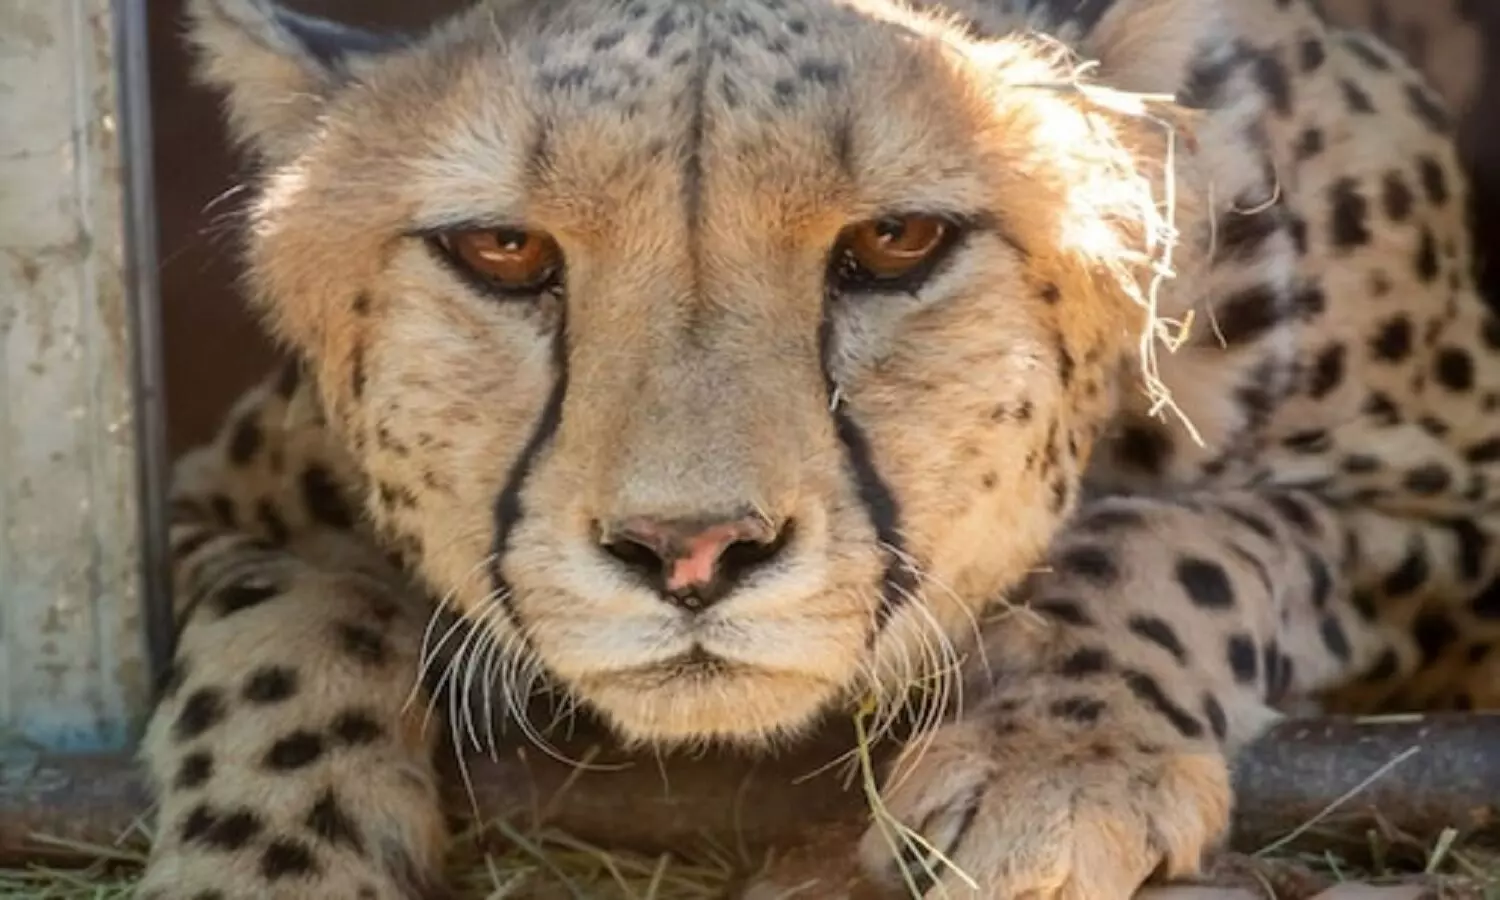 Name of Cheetah: इस नाम से जानी जाएगी कूनो की मादा चीता, प्रधानमंत्री ने किया नामकरण, अन्य के भी रखे जाएंगे नाम